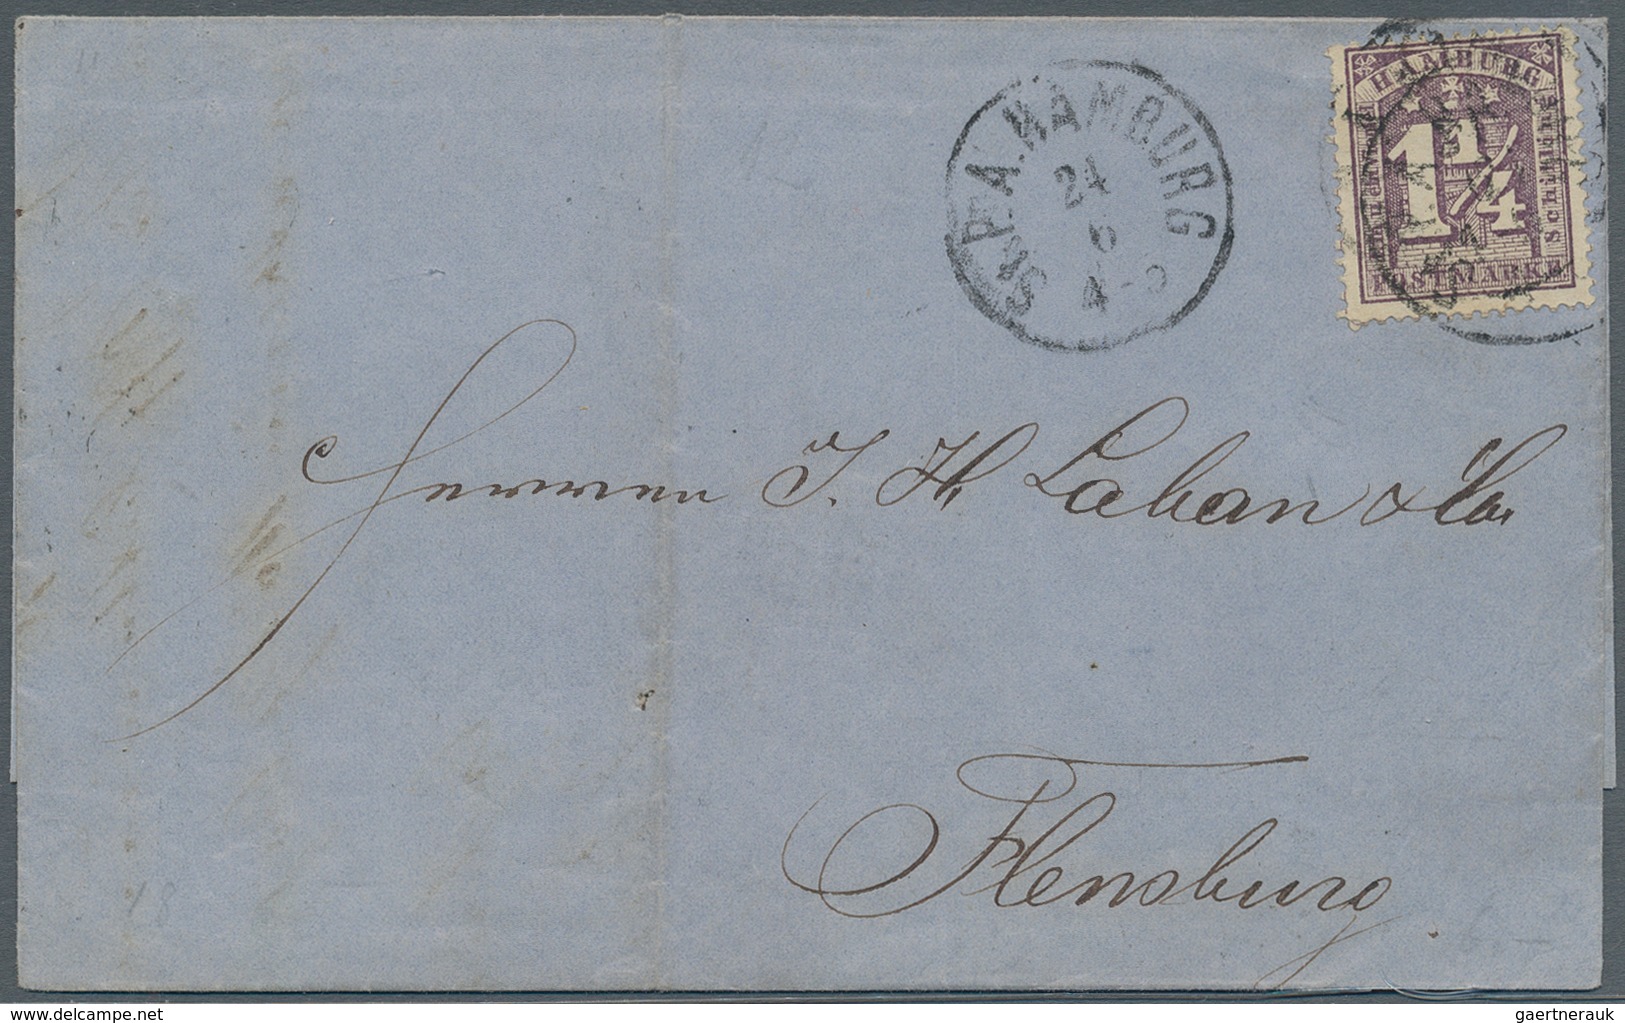 Hamburg - Marken und Briefe: 1864, Fünf Pracht/Kabinett-Briefe vom dänischen Postamt mit 1¼ S, dabei